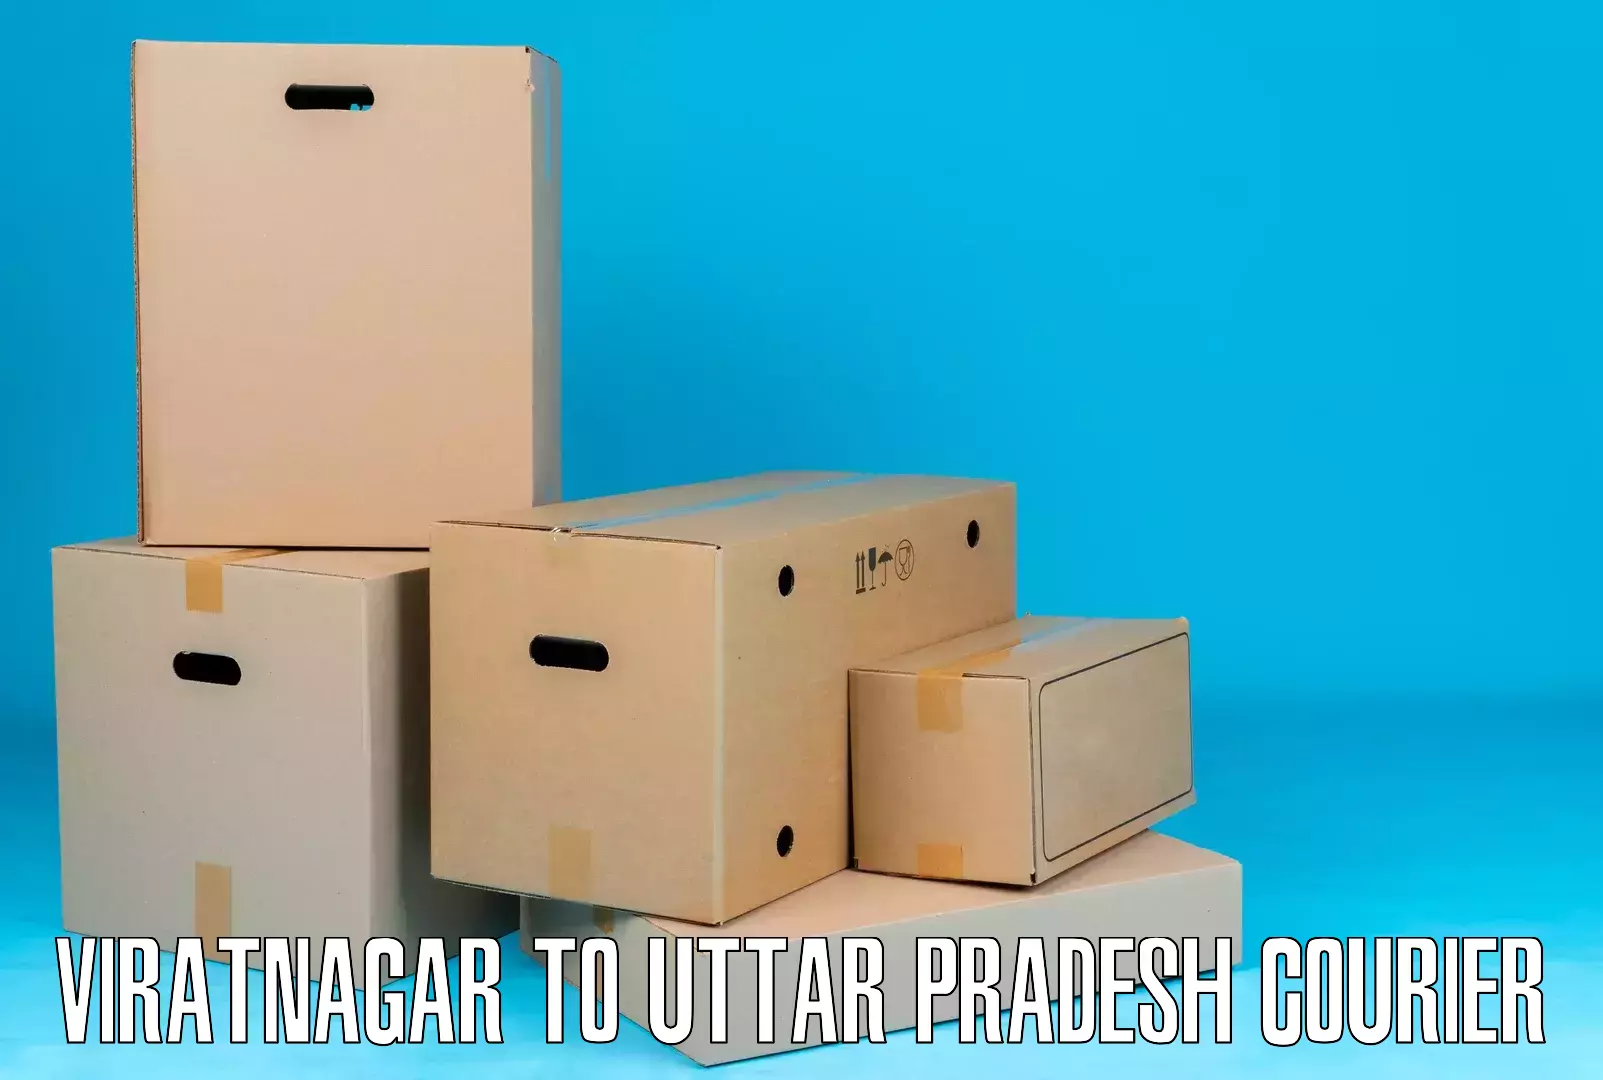 Package tracking Viratnagar to Baghpat